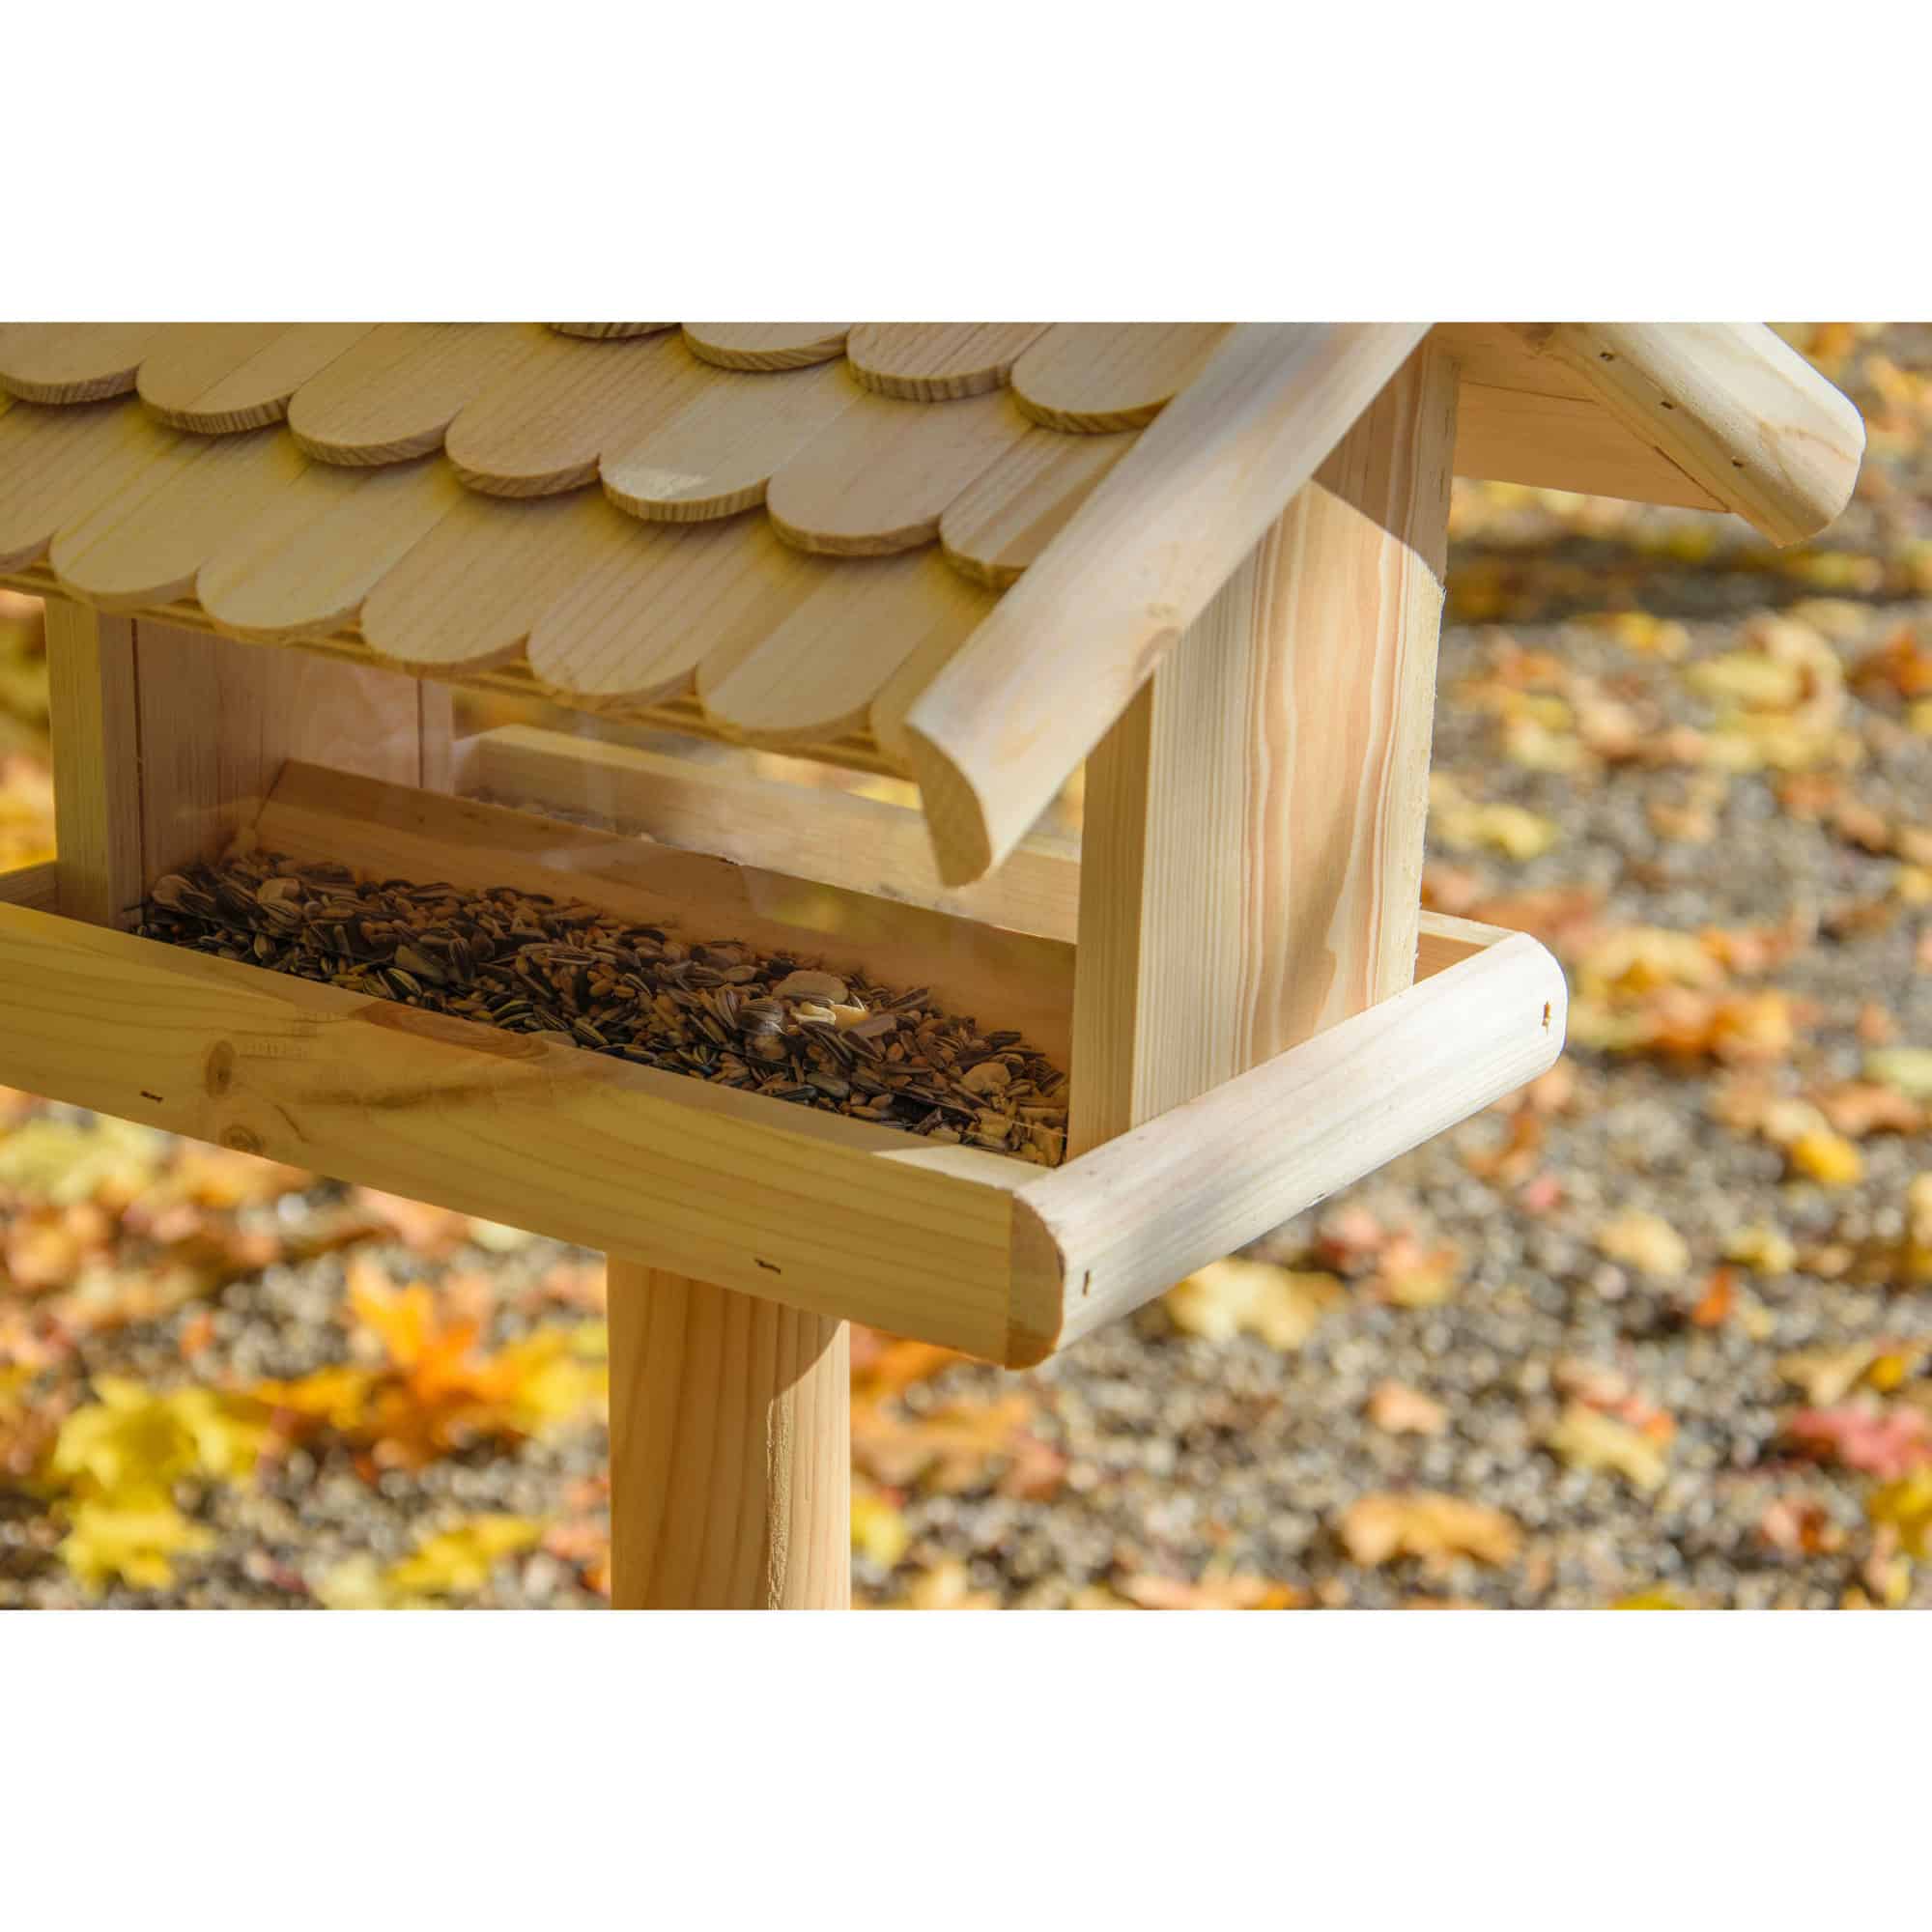 Dobar Vogelhaus mit Futter-Silo mit Holz Dachschindeln Futterhaus